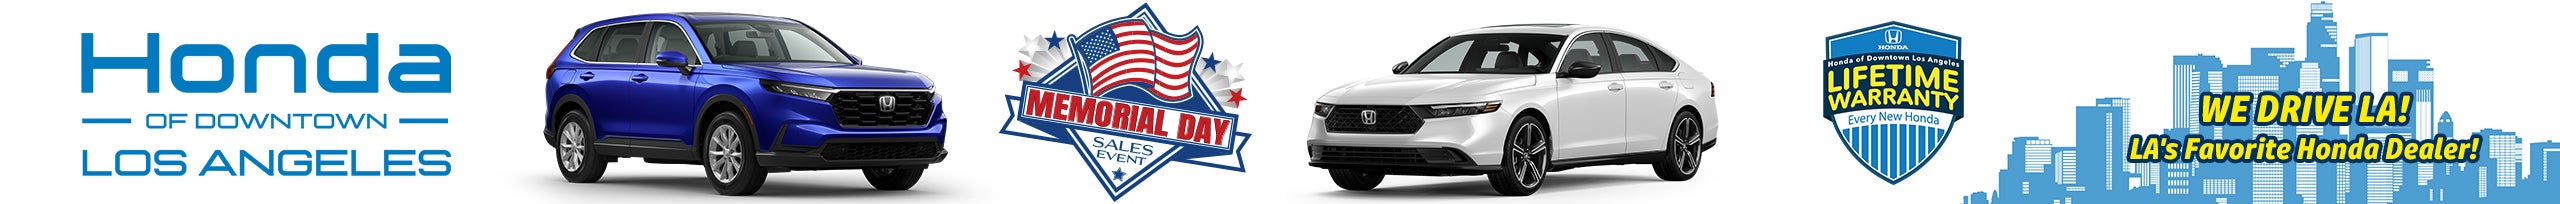 Memorial Day Sales Event at Honda DTLA!